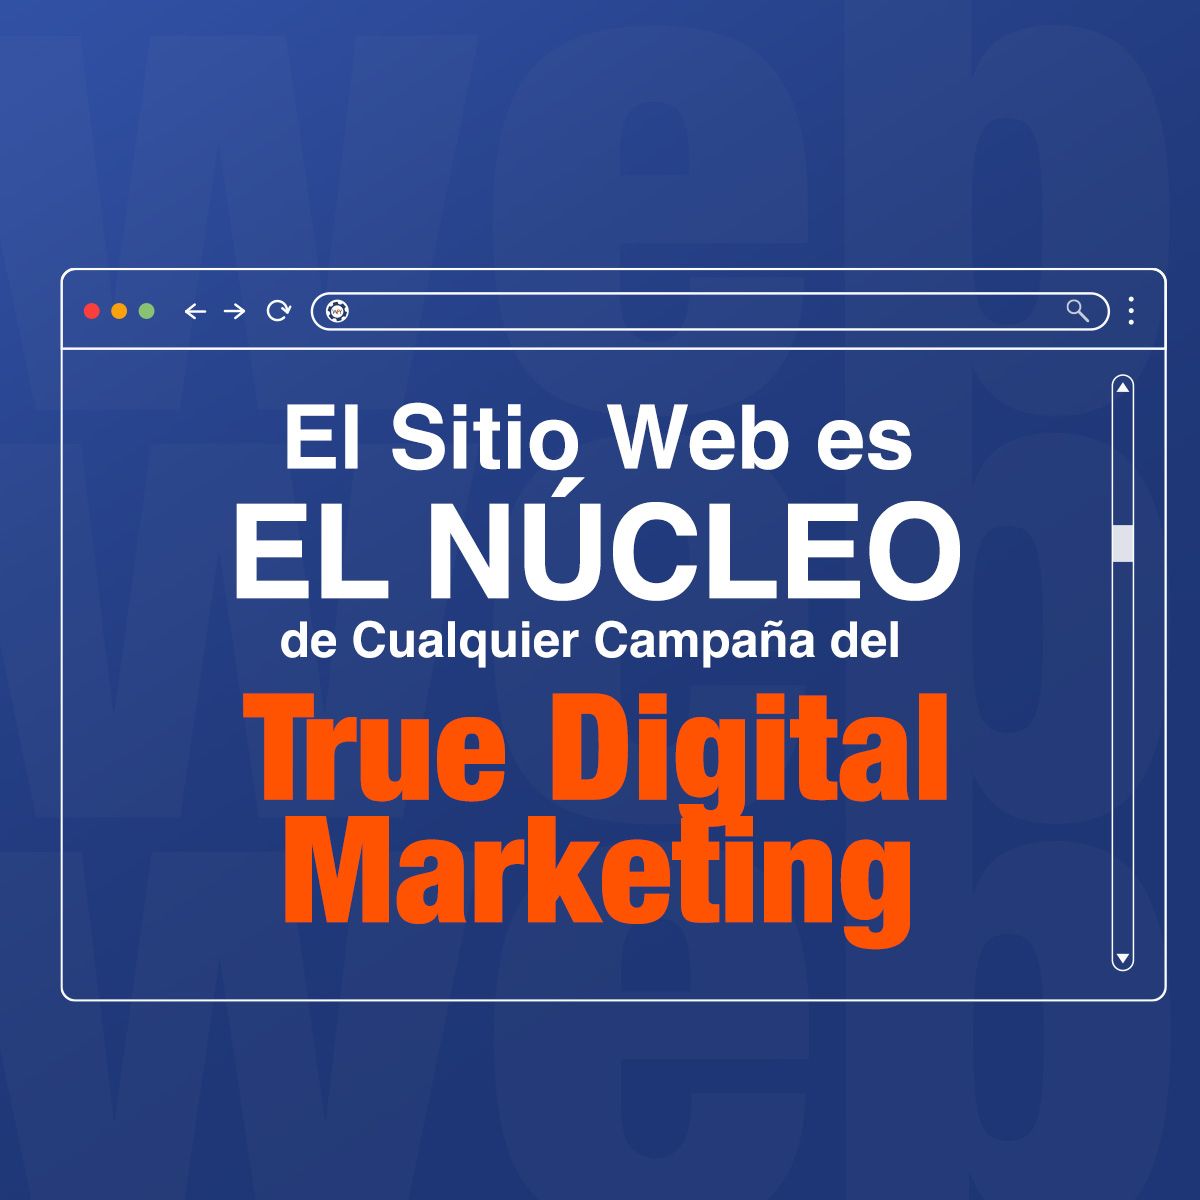 El Sitio Web es el Núcleo de Cualquier Campaña del True Digital Marketing